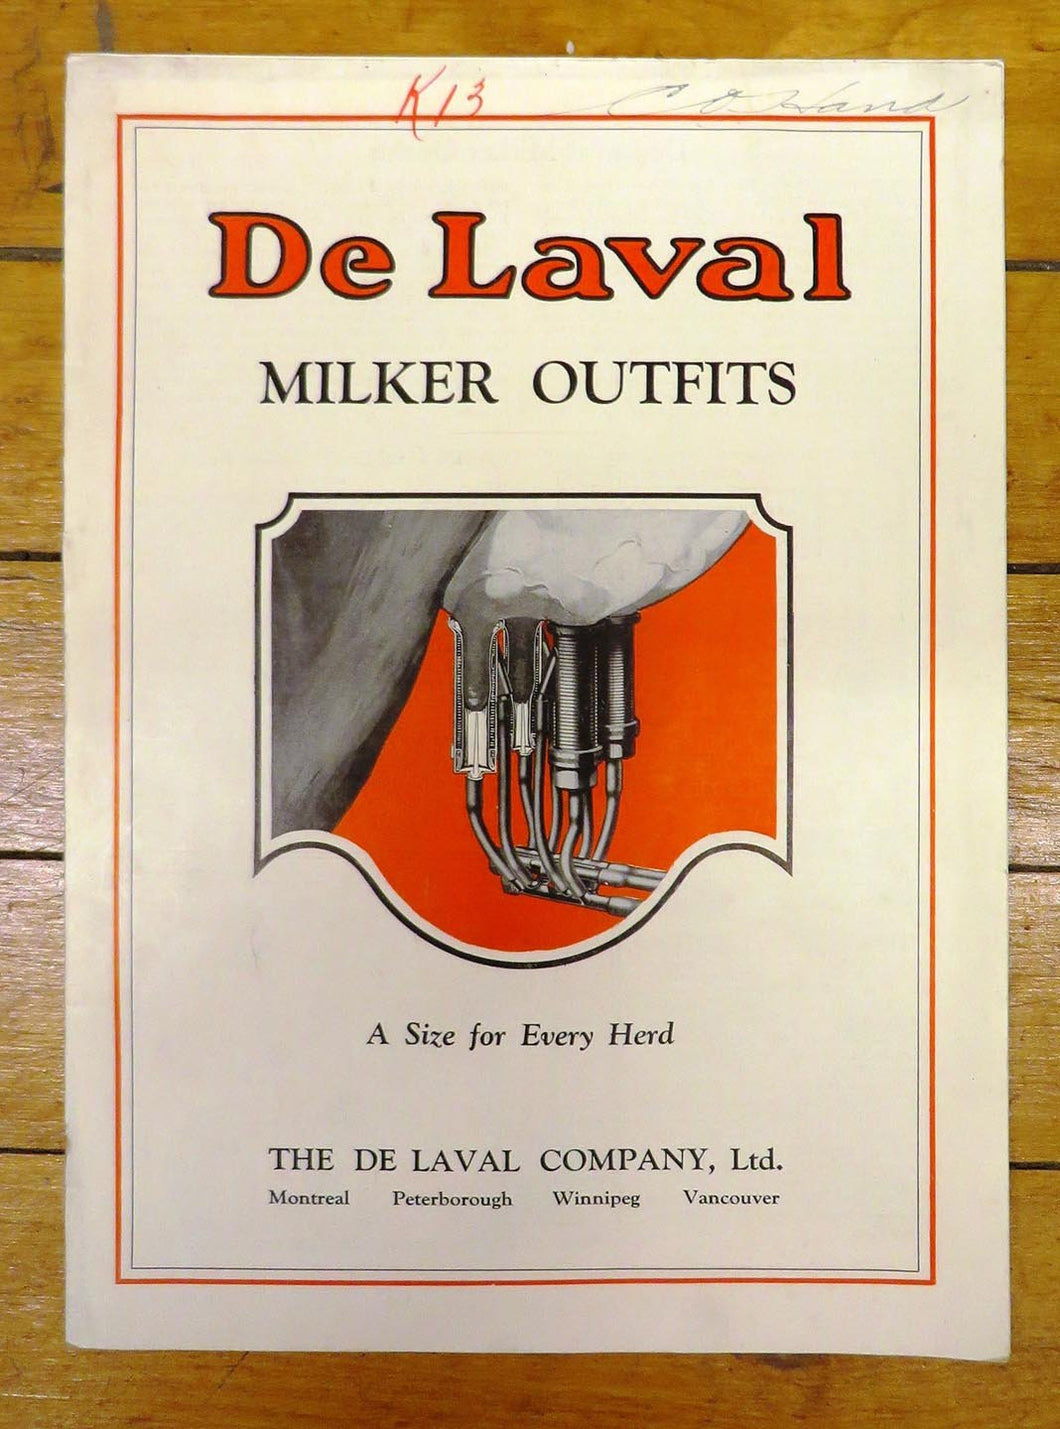 De Laval Milker Outfits catalogue